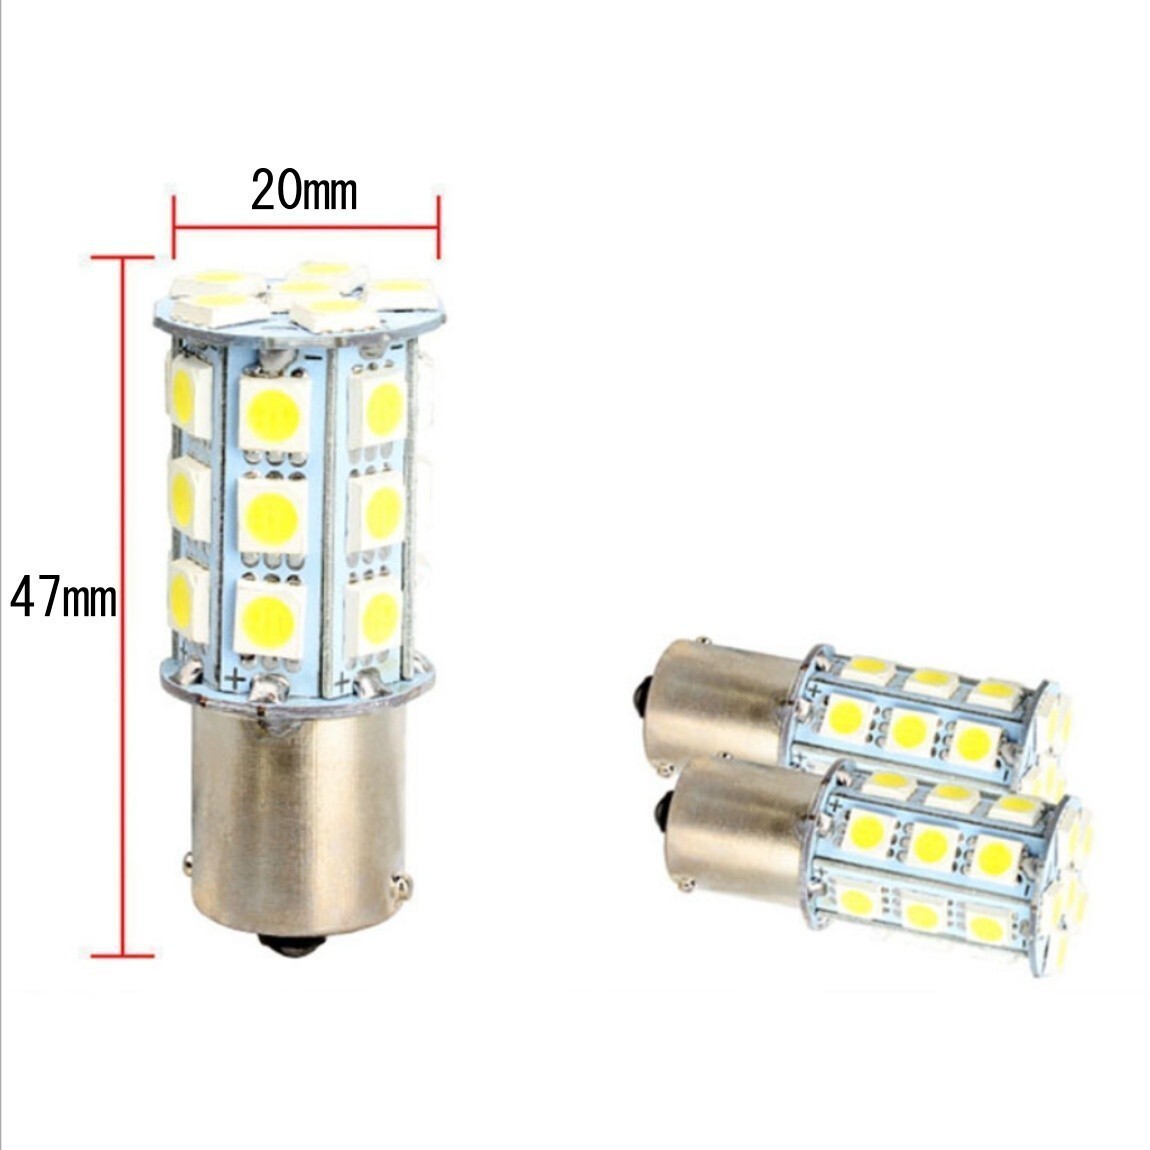 【送料無料】2個 爆光LED ホワイト S25 ダブル 27連 ストップランプ ブレーキランプ テールランプ 高輝度SMD 5050SMDの画像4